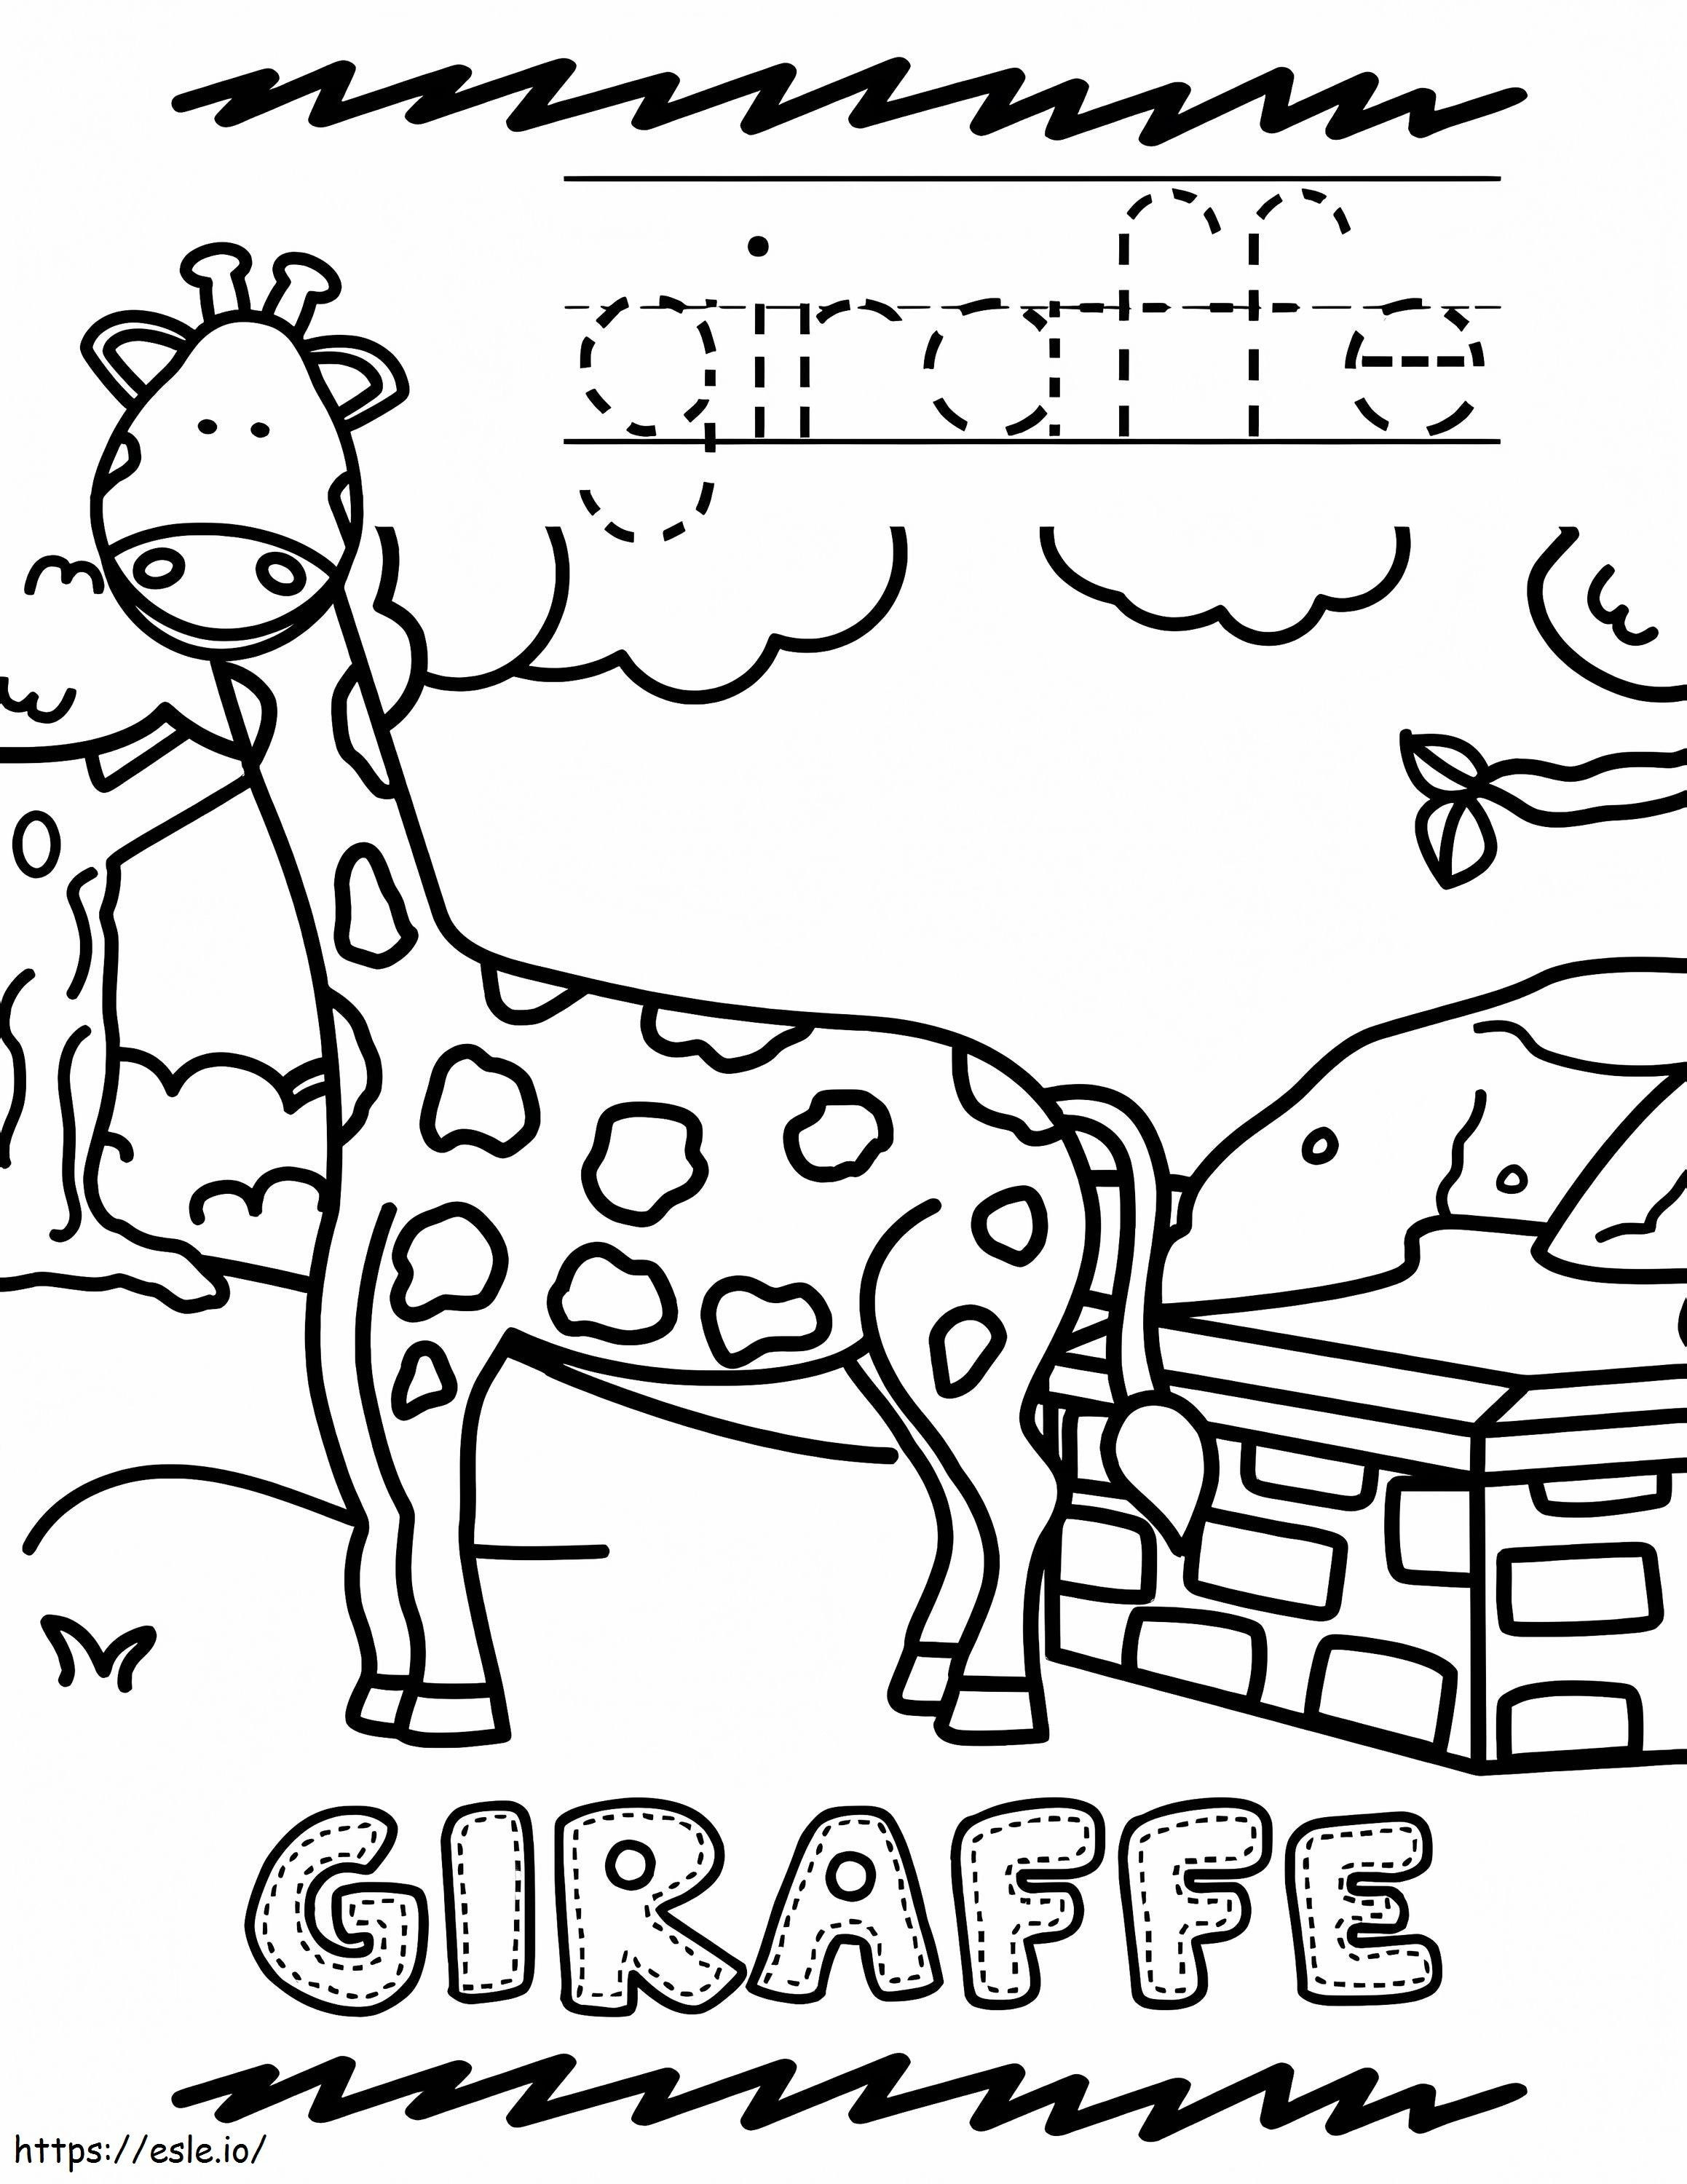 Giraffe im Zoo ausmalbilder